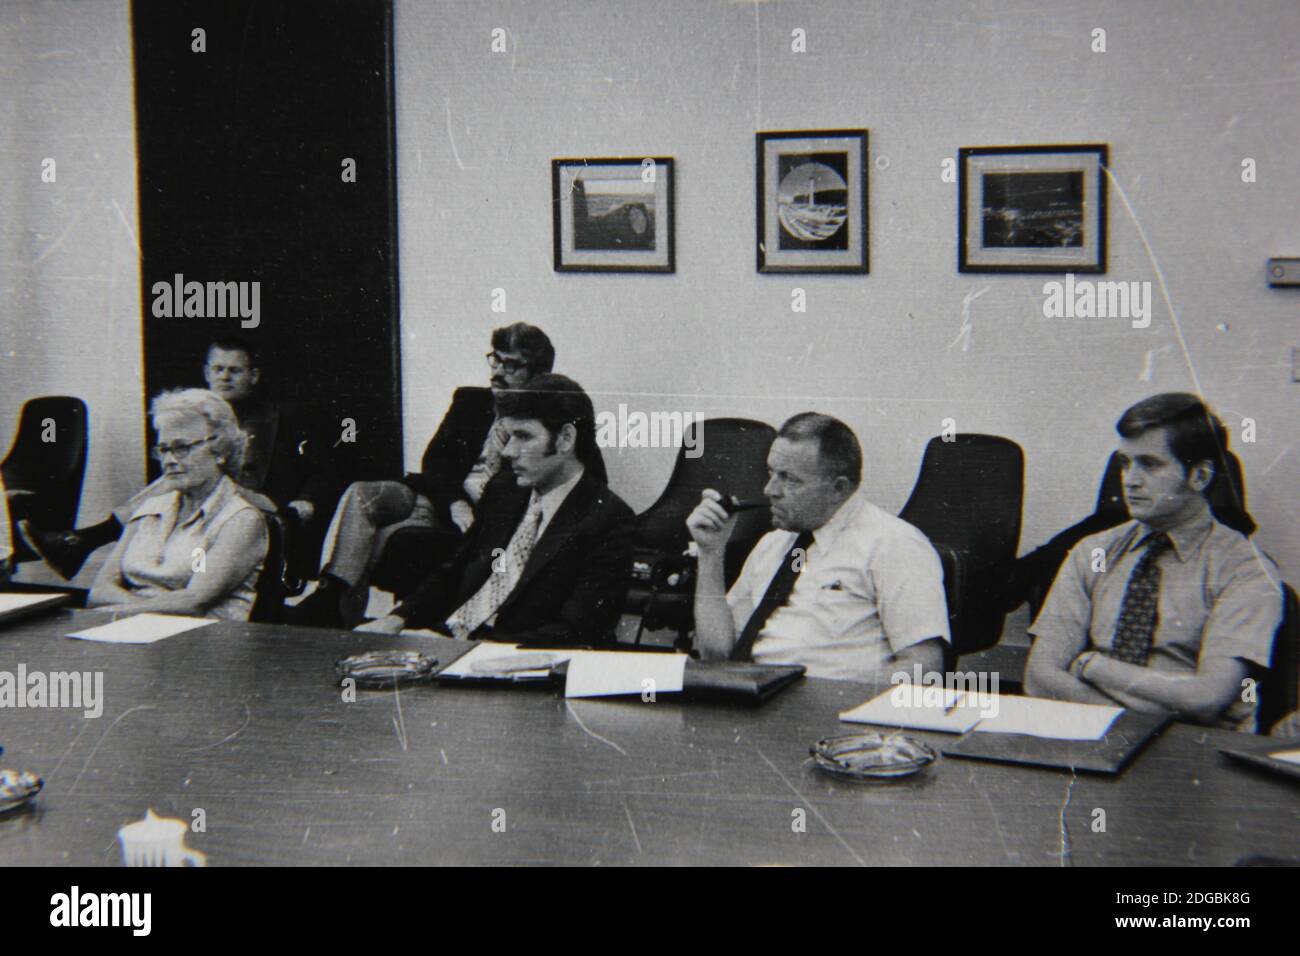 Belle photographie en noir et blanc vintage des années 1970 d'une réunion d'affaires remplie de professionnels de cols blancs dans une immense salle de conférence. Banque D'Images